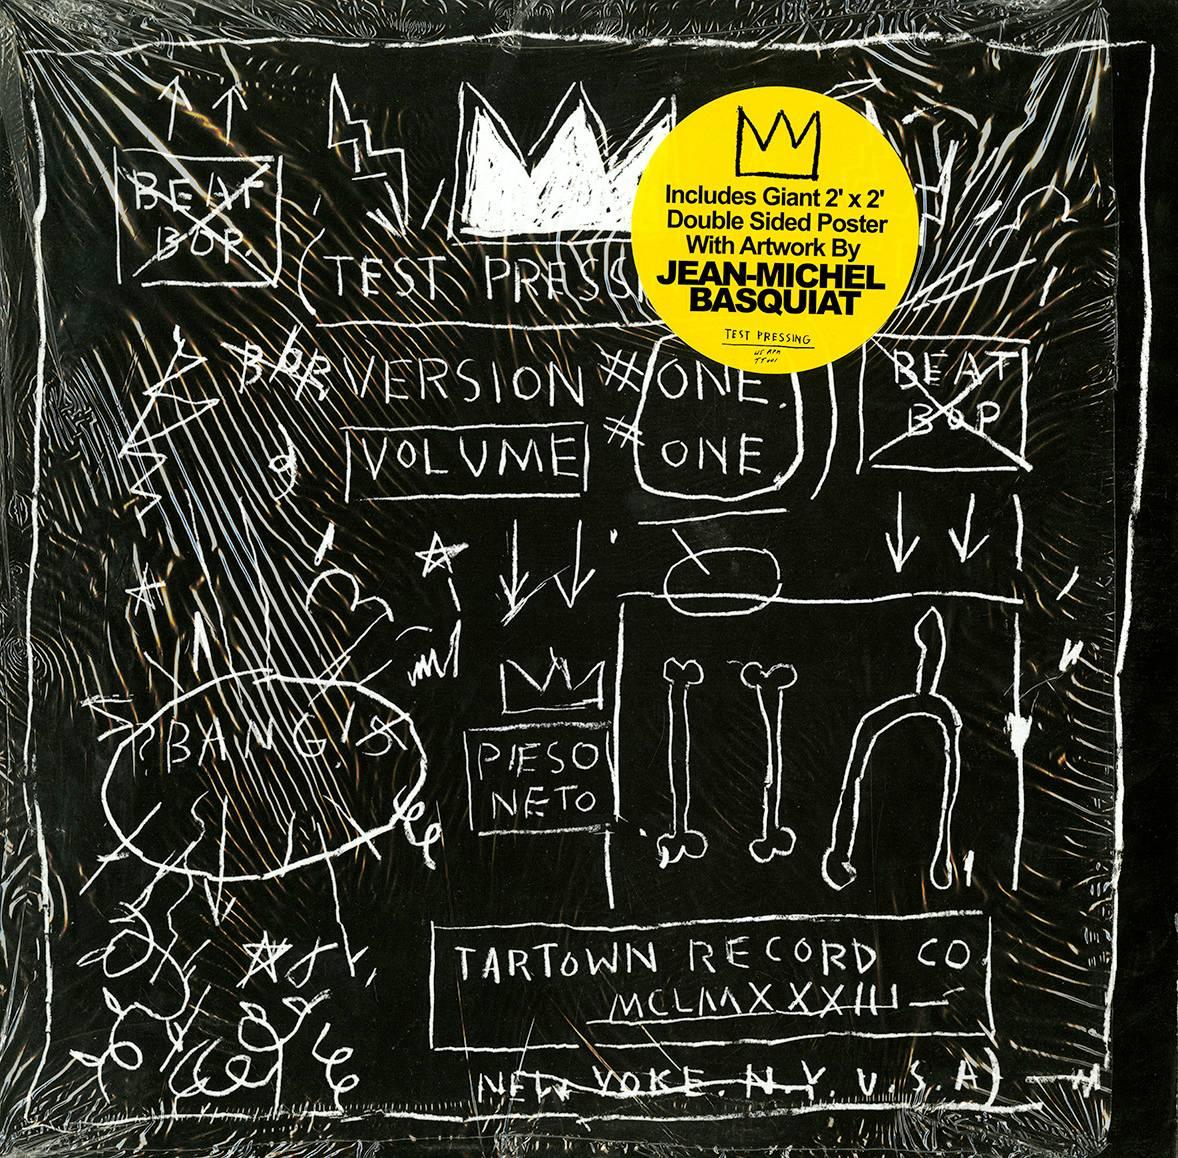 Basquiat Beatp Bop Plattenkunst und Poster 1983/2005 (Basquiat Plattenkunst) – Art von Jean-Michel Basquiat